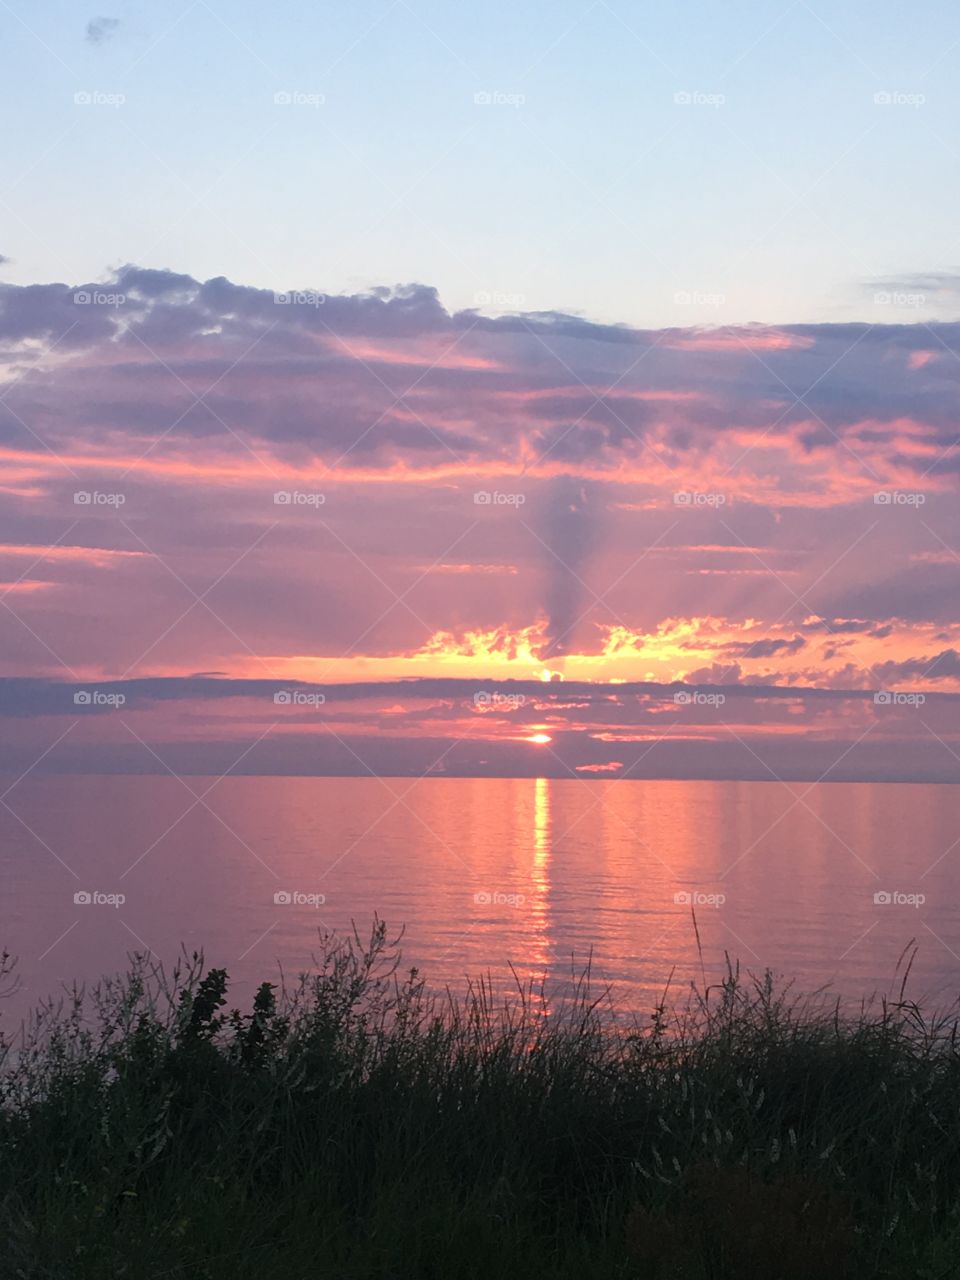 Sunset reflecting on lake 